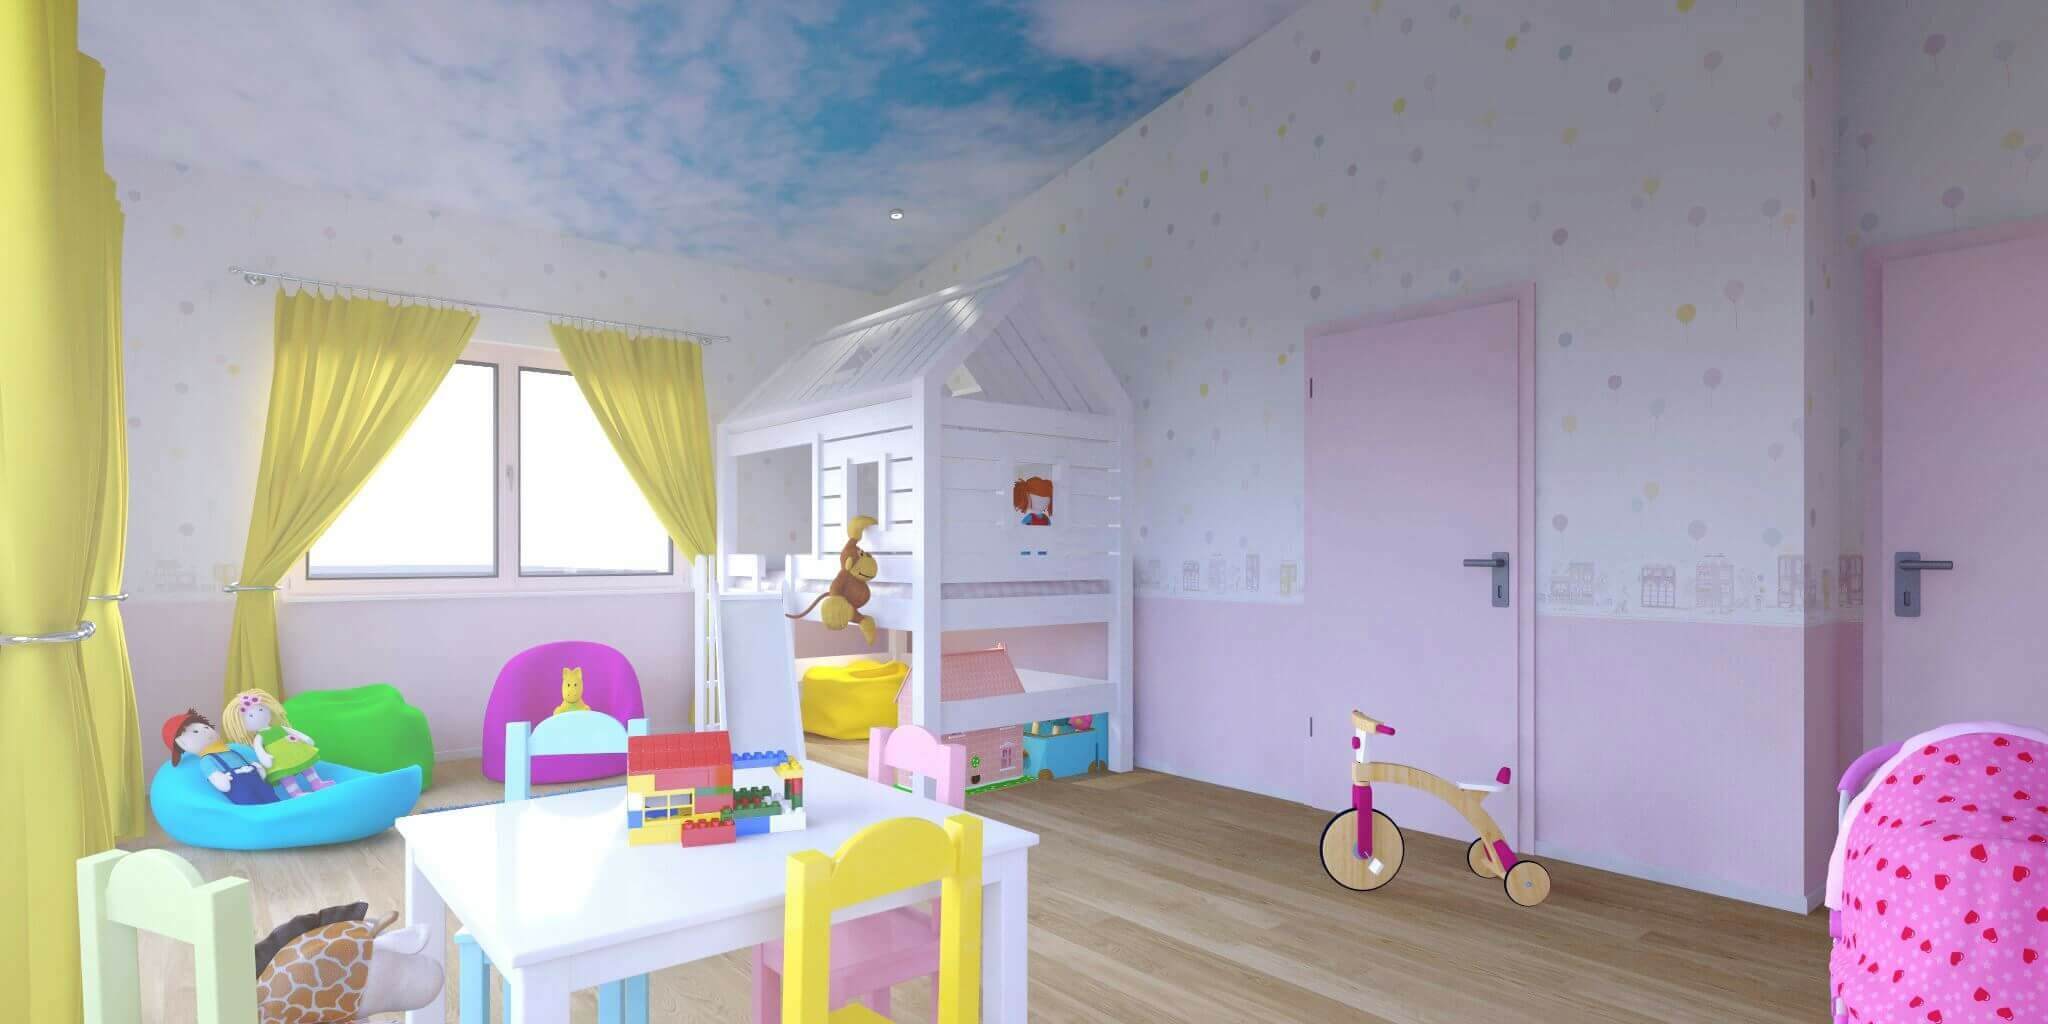 Kinderzimmer Design in hellen Pastellfarben mit Spielhaus, Tisch und Kinderwagen